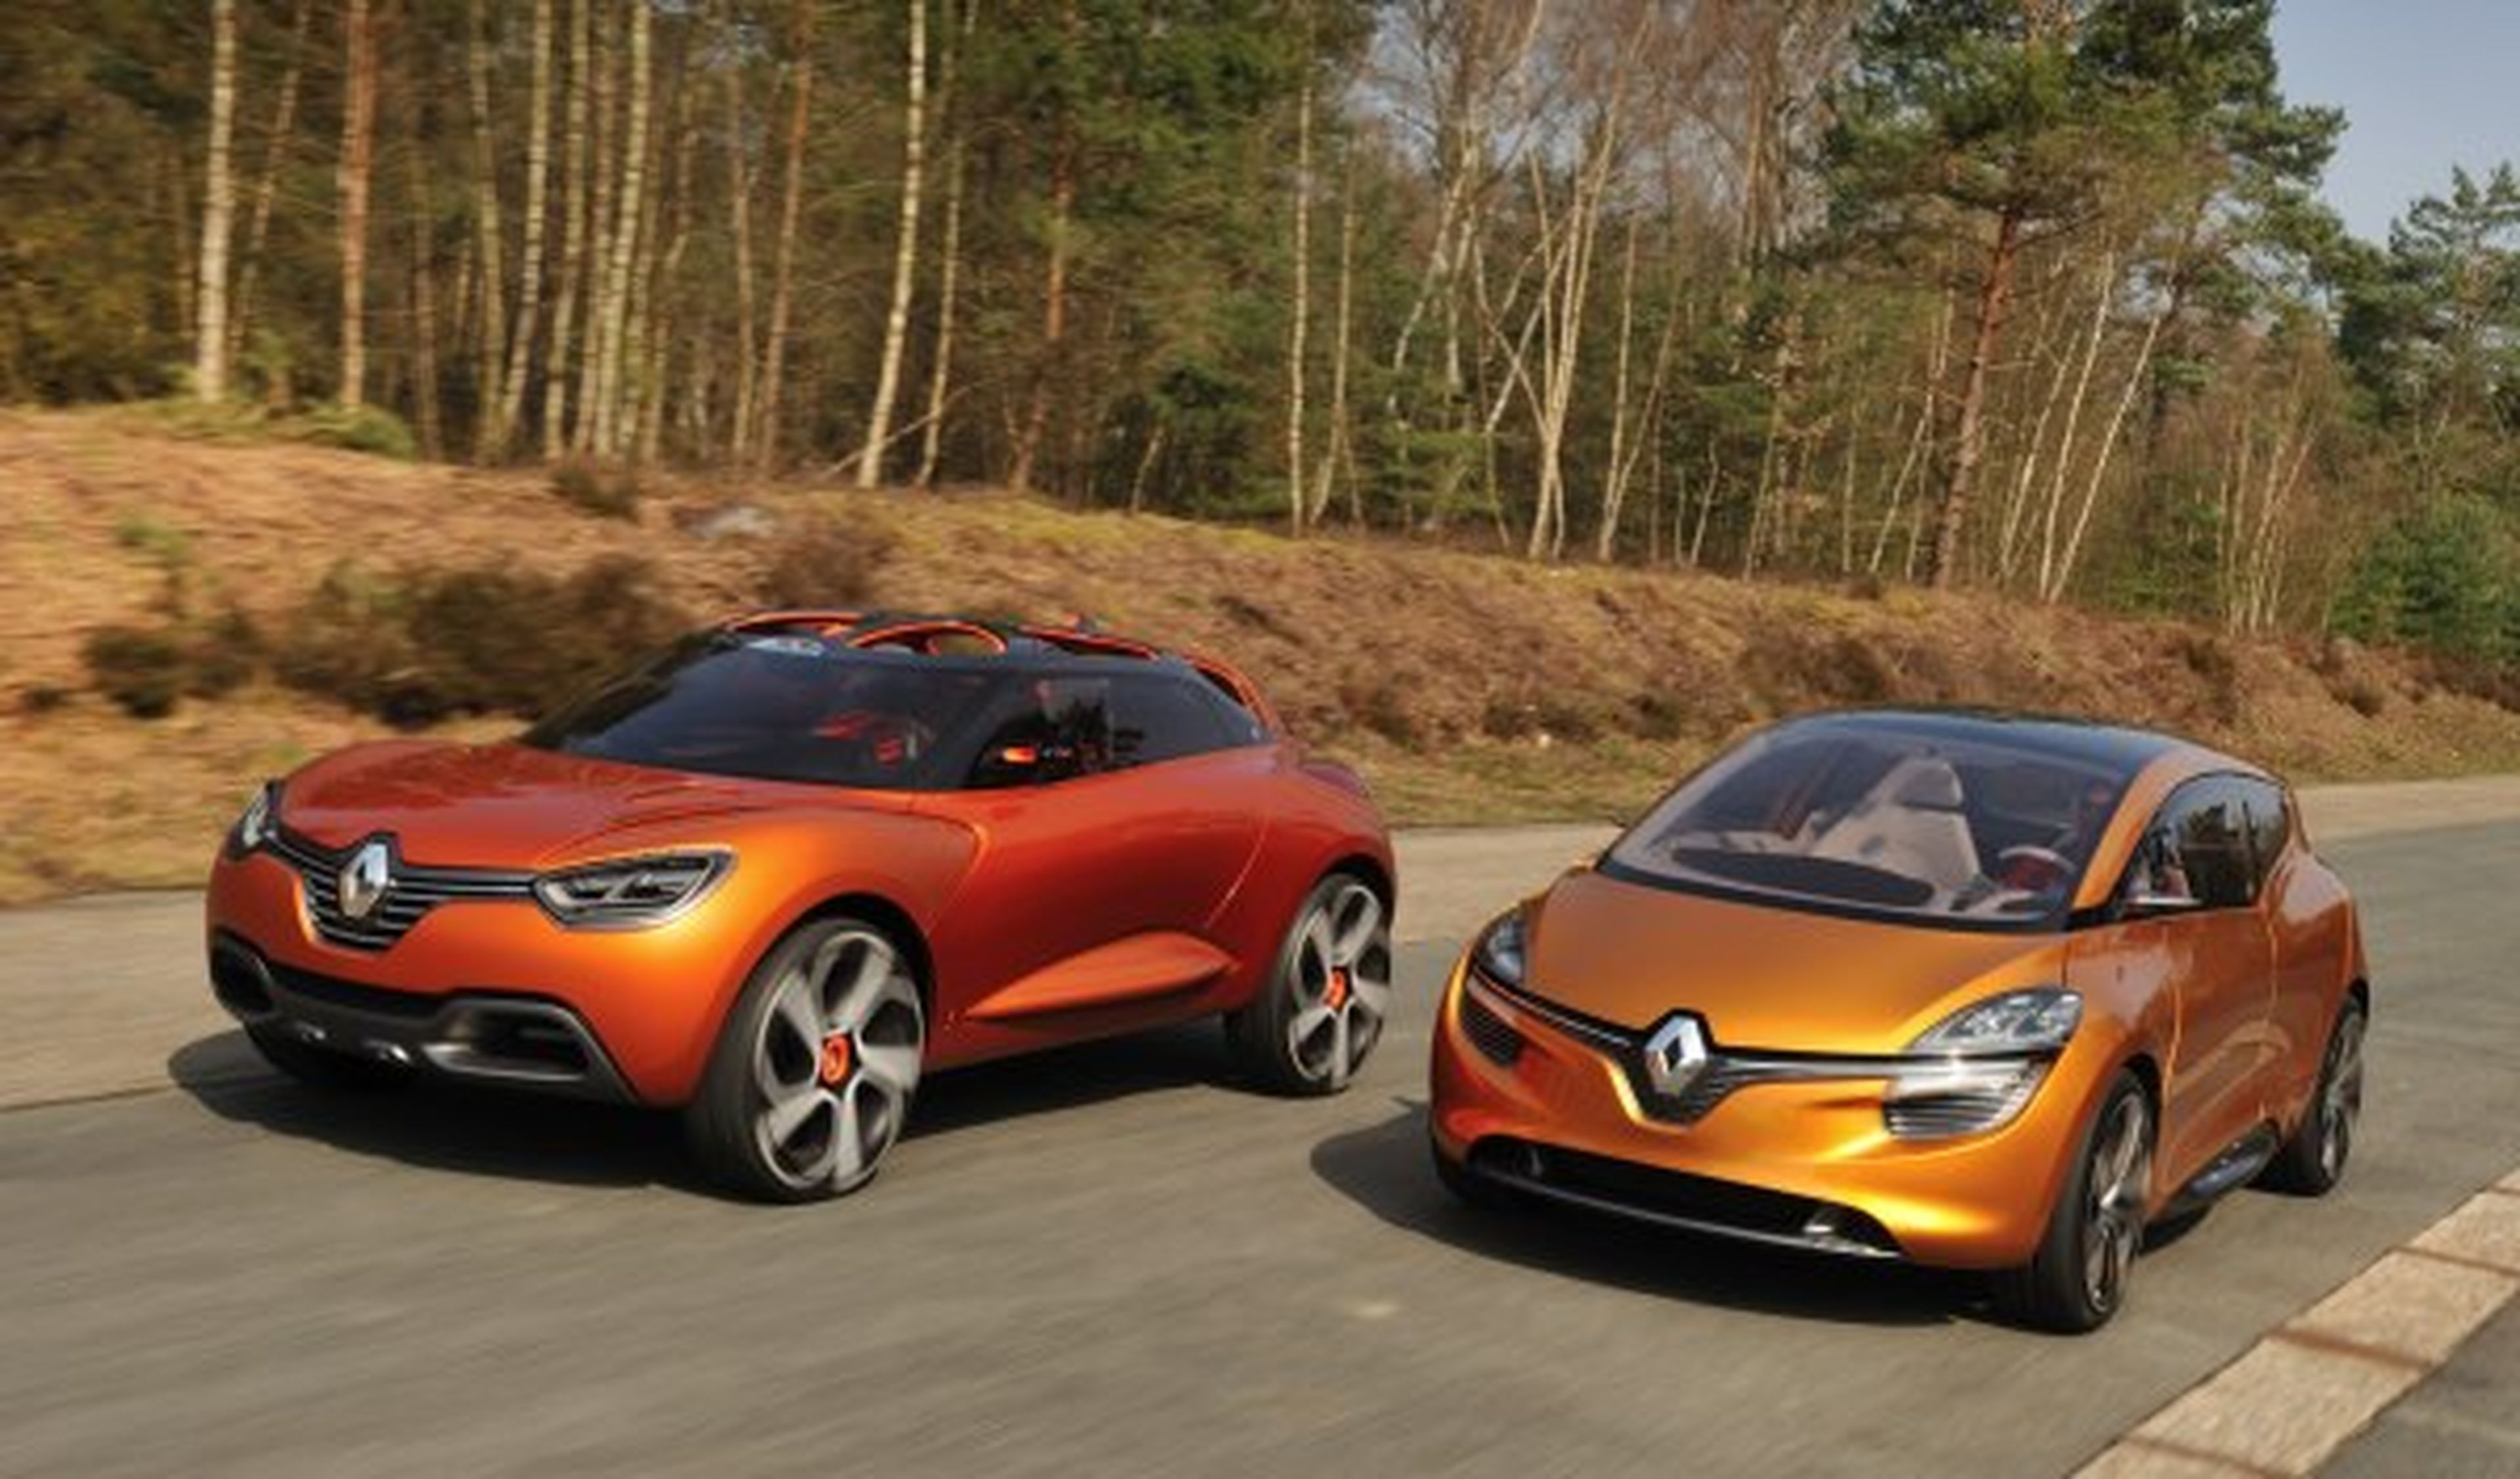 Captur y R-Space, probamos los 'concept' de Renault